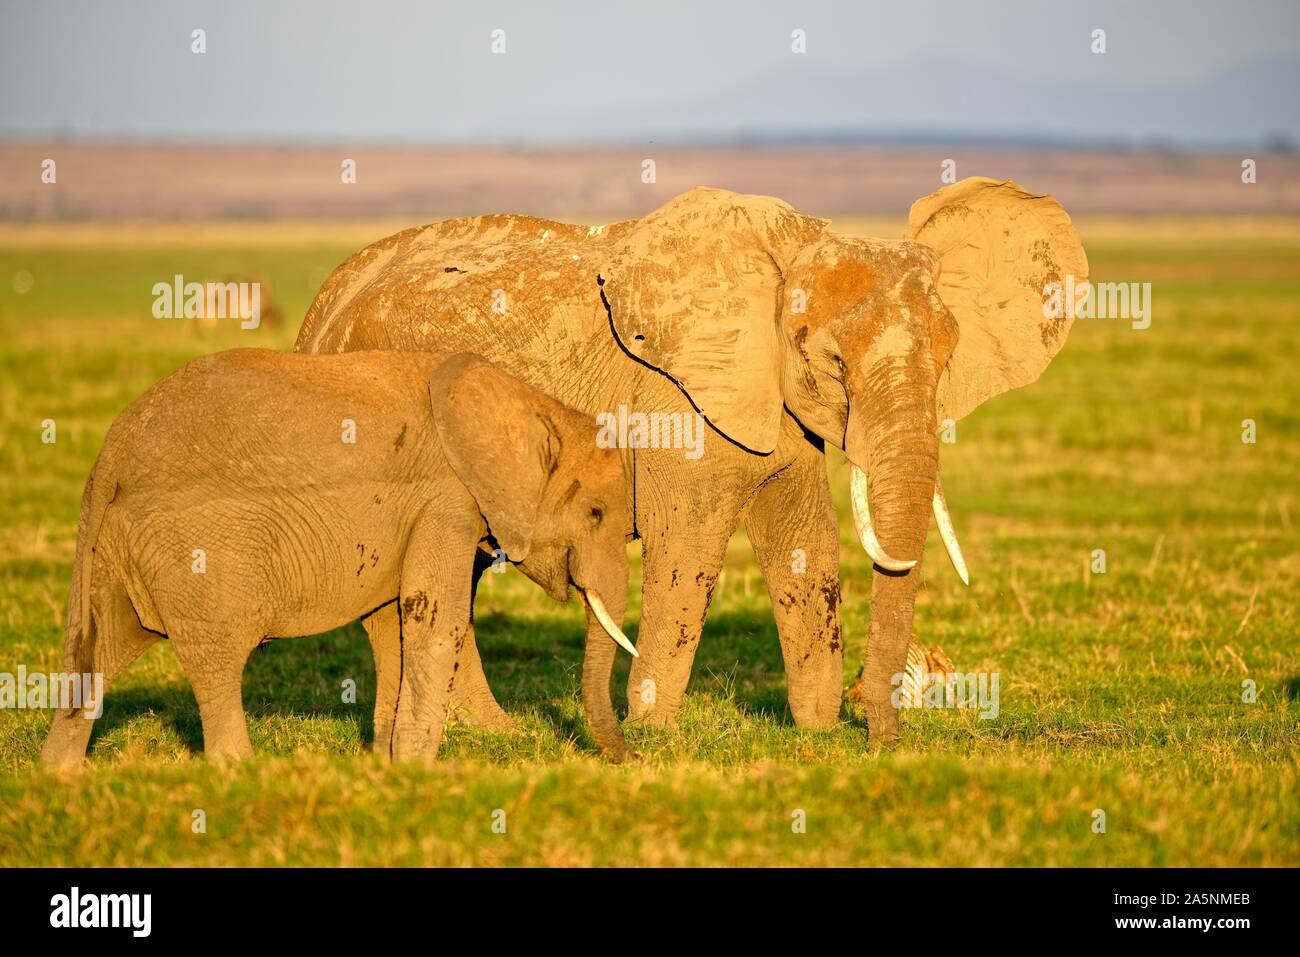 African elephant (Loxodonta africana), Elephant cow with young animal, Amboseli National Park, Kenya Stock Photo